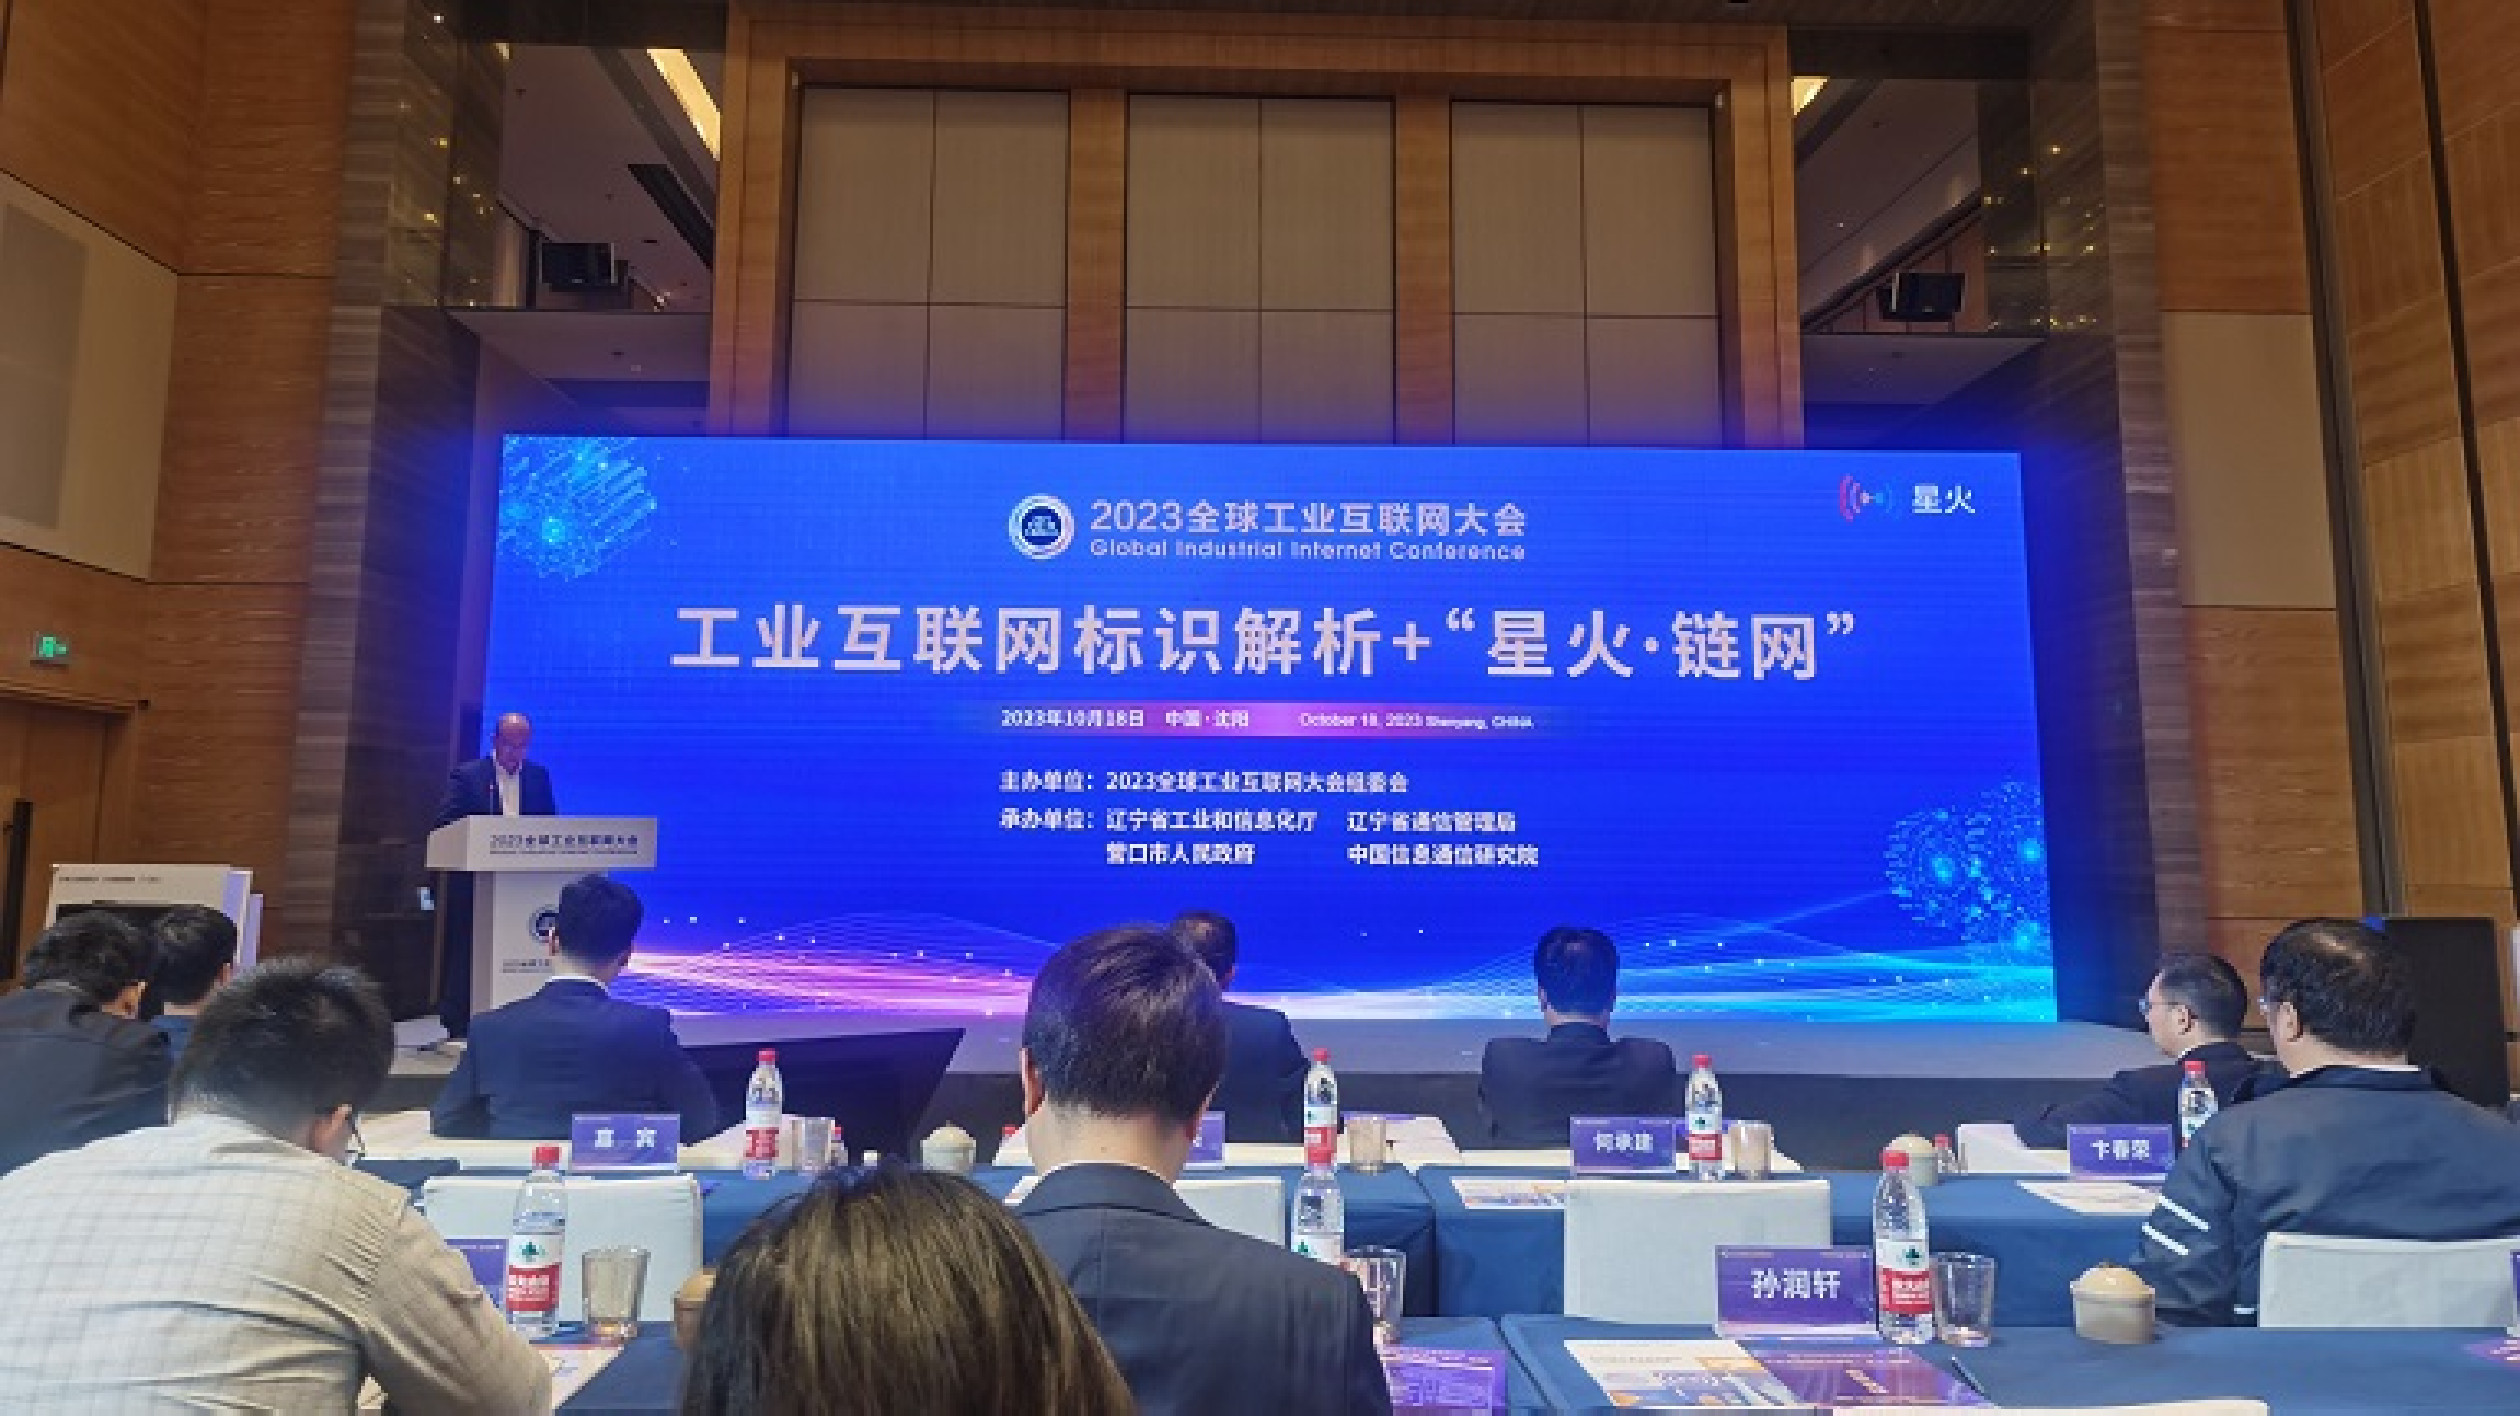 推動東北地區數碼化協同發展 工業互聯網標識解析+「星火·鏈網」專題論壇在瀋舉行